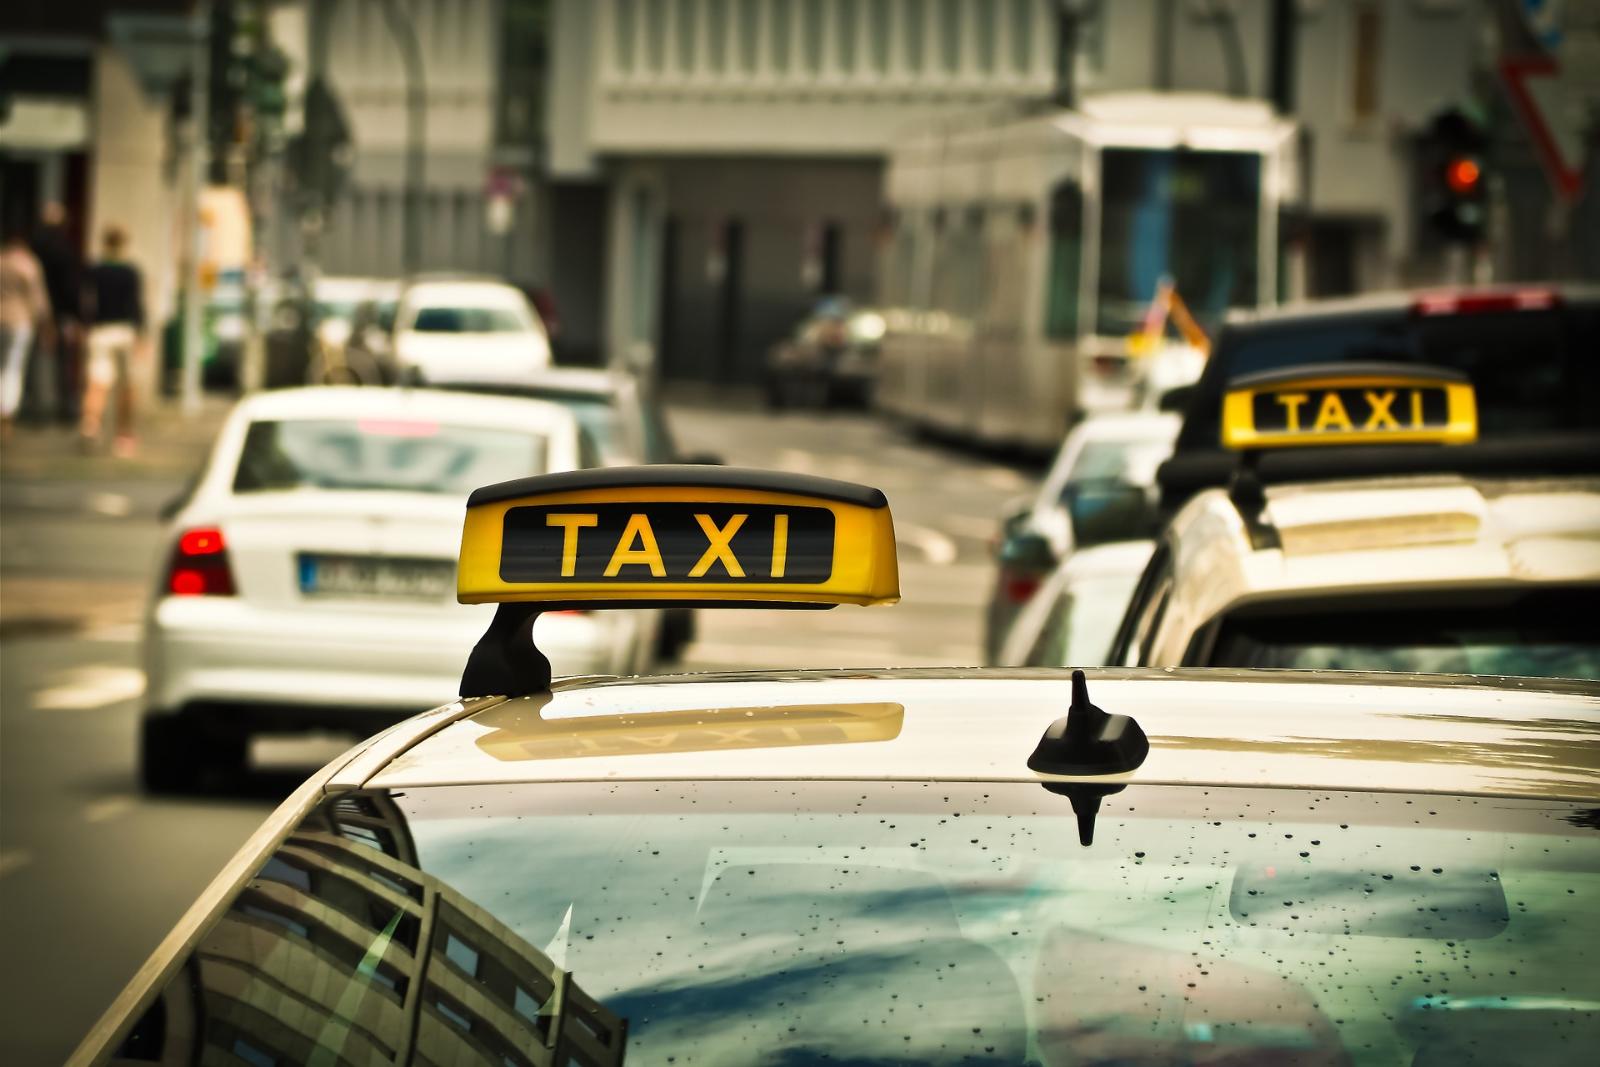 Après Un Vol Annulé Le Chauffeur De Taxi Offre Gratuitement Un Trajet